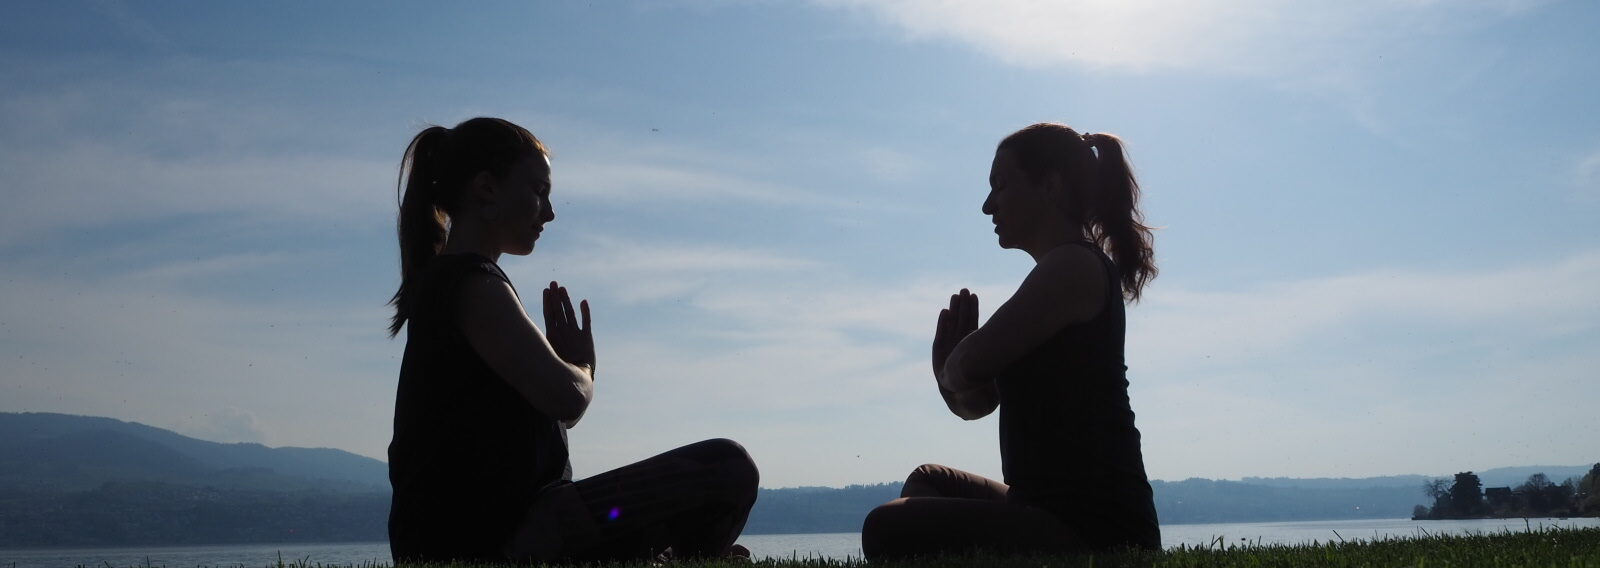 Nadine von naé yoga mit Chantal von Tada Yoga machen die Yoga-Pose Sukhasana am See in Uerikon